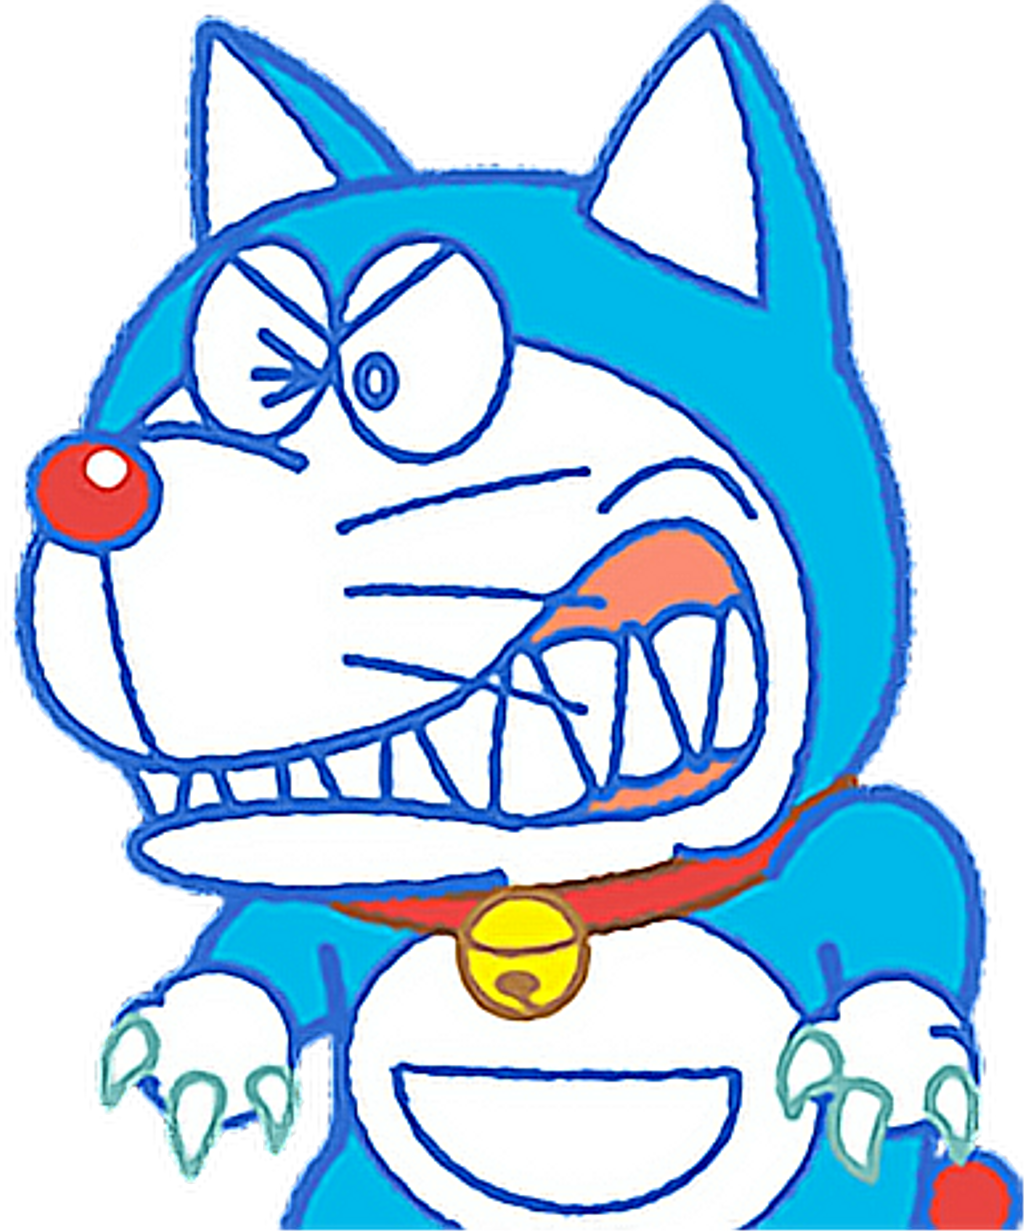 Ảnh Doraemon cải trang thành sói